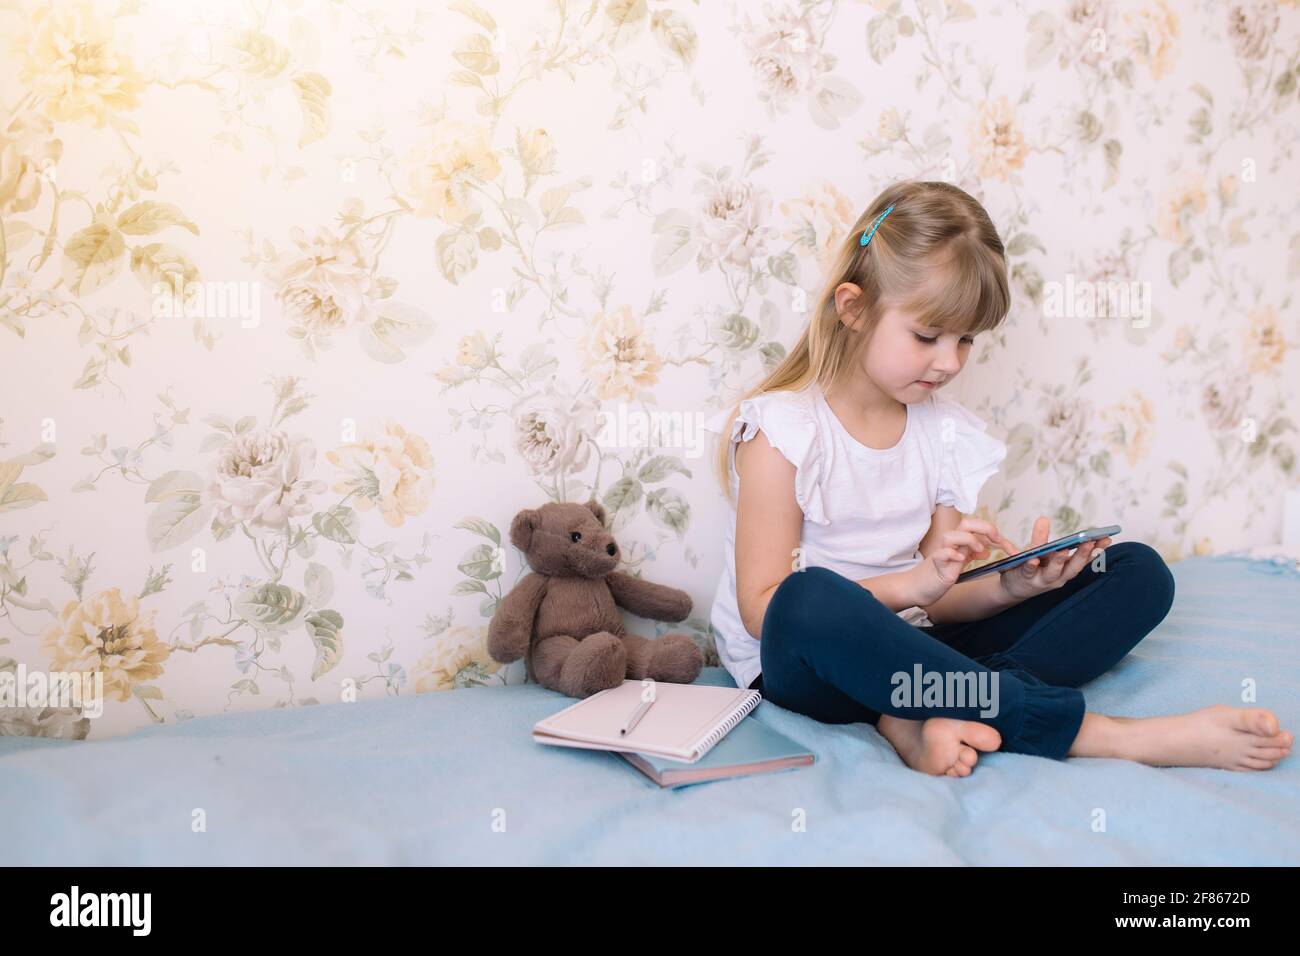 Una bambina si siede sul letto nell'elegante camera da letto, tenendo il telefono e legge qualcosa nello smartphone. Concetto di comunicazione Foto Stock